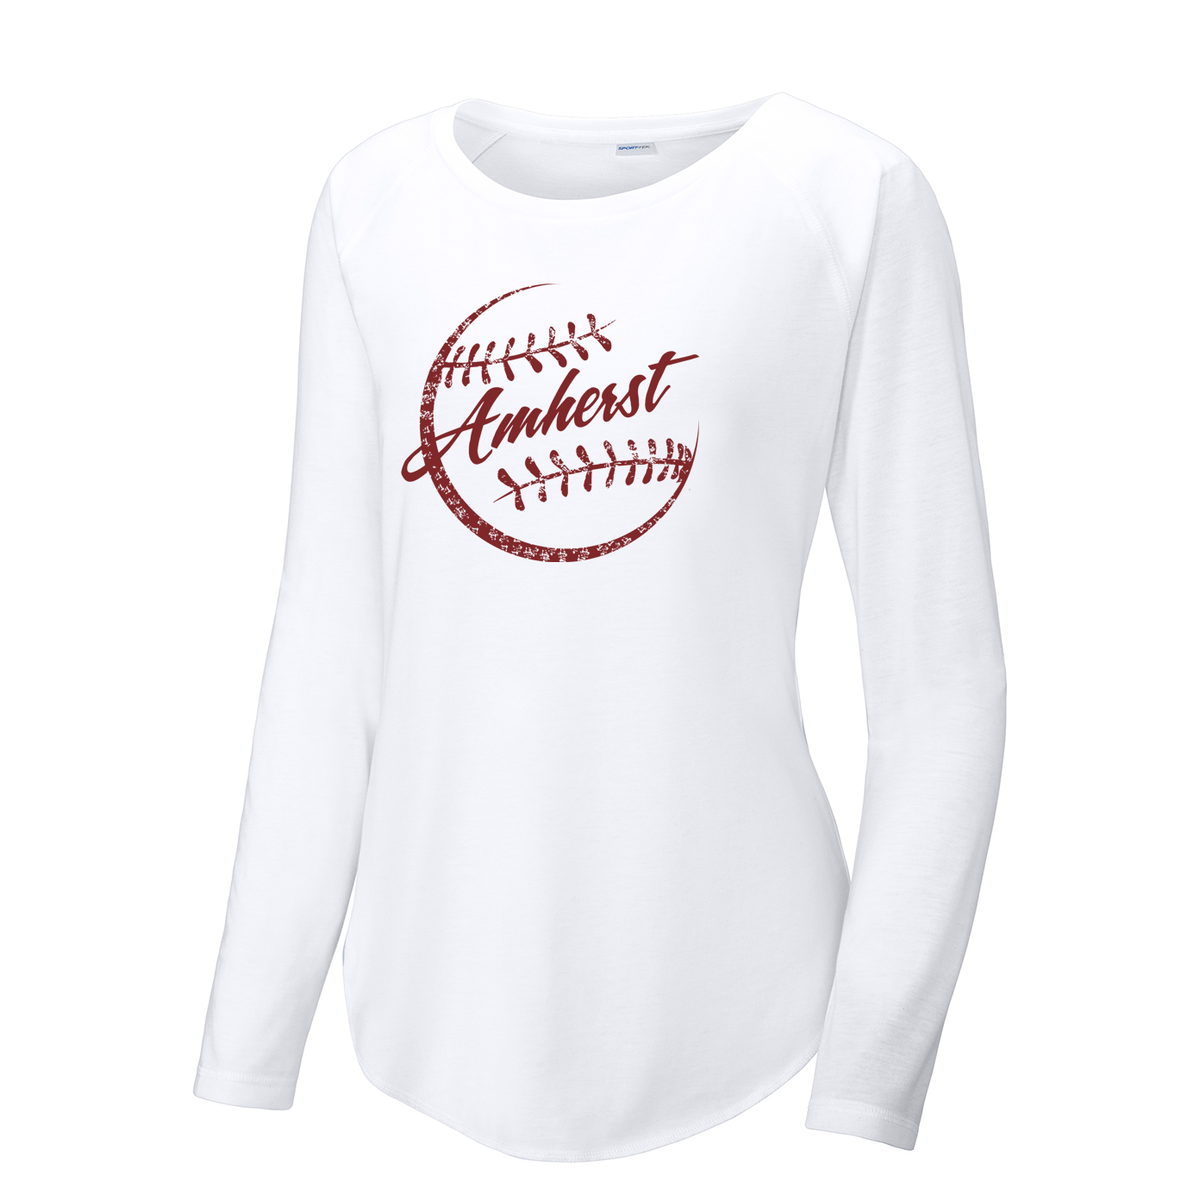 Amherst Softball Women's Raglan Long Sleeve CottonTouch